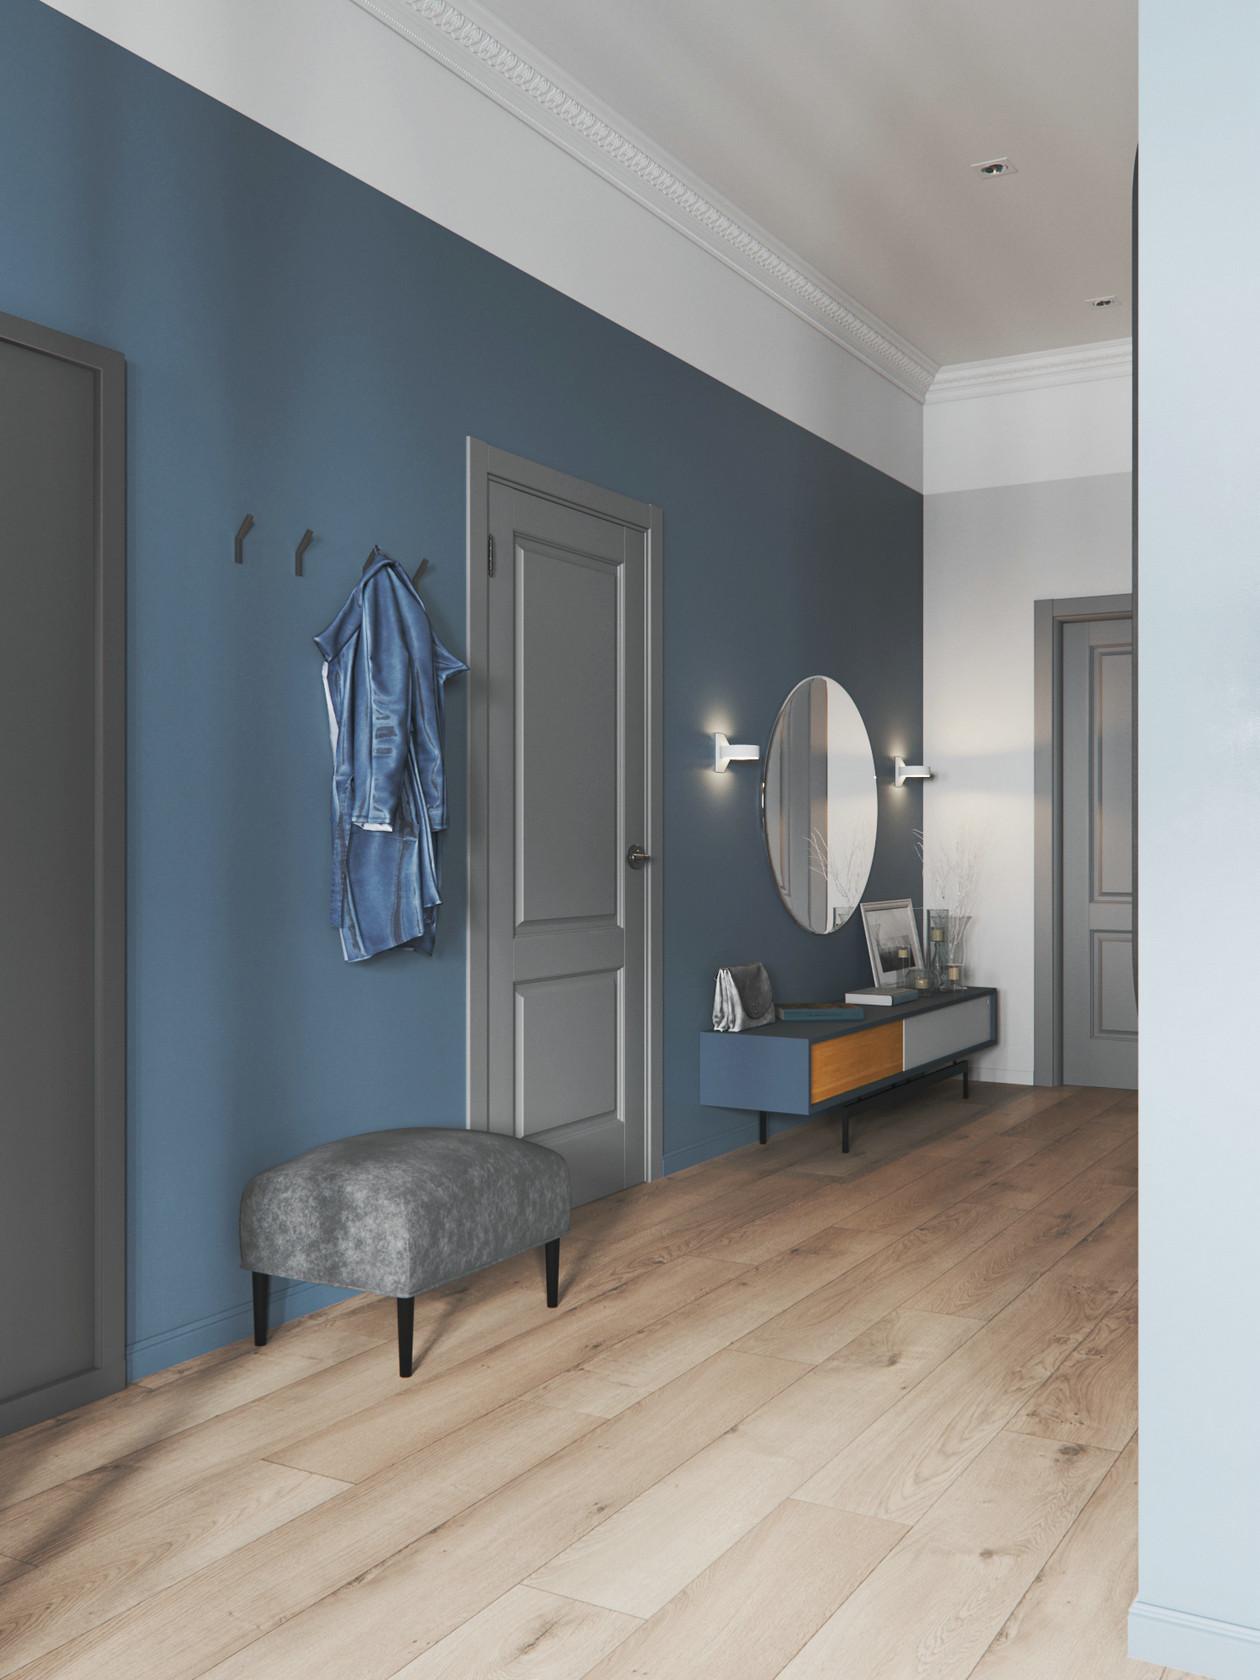 灰蓝色墙面配什么颜色的家具和窗帘